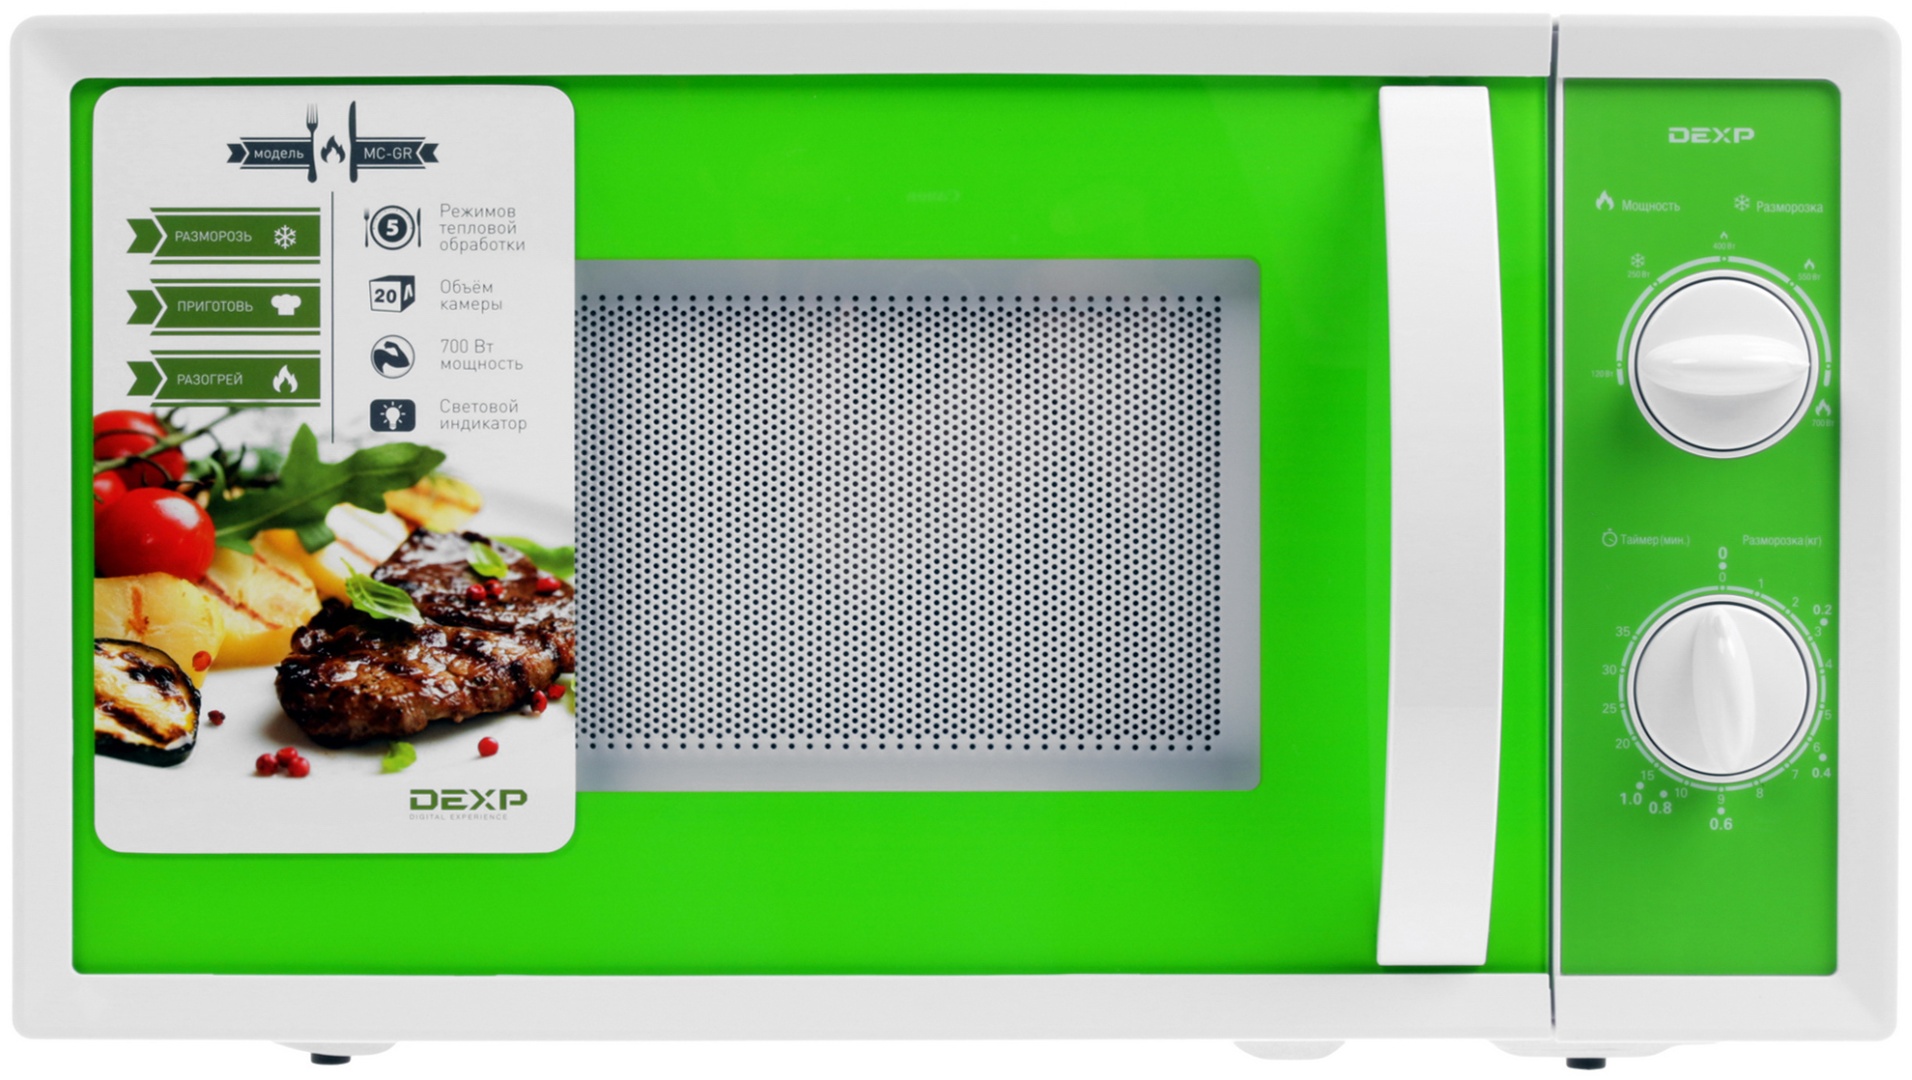 Микроволновая печь dexp купить. Микроволновка DEXP MC gr. DEXP MC-gr зеленый. Микроволновка дексп зеленая. СВЧ печь ДНС.